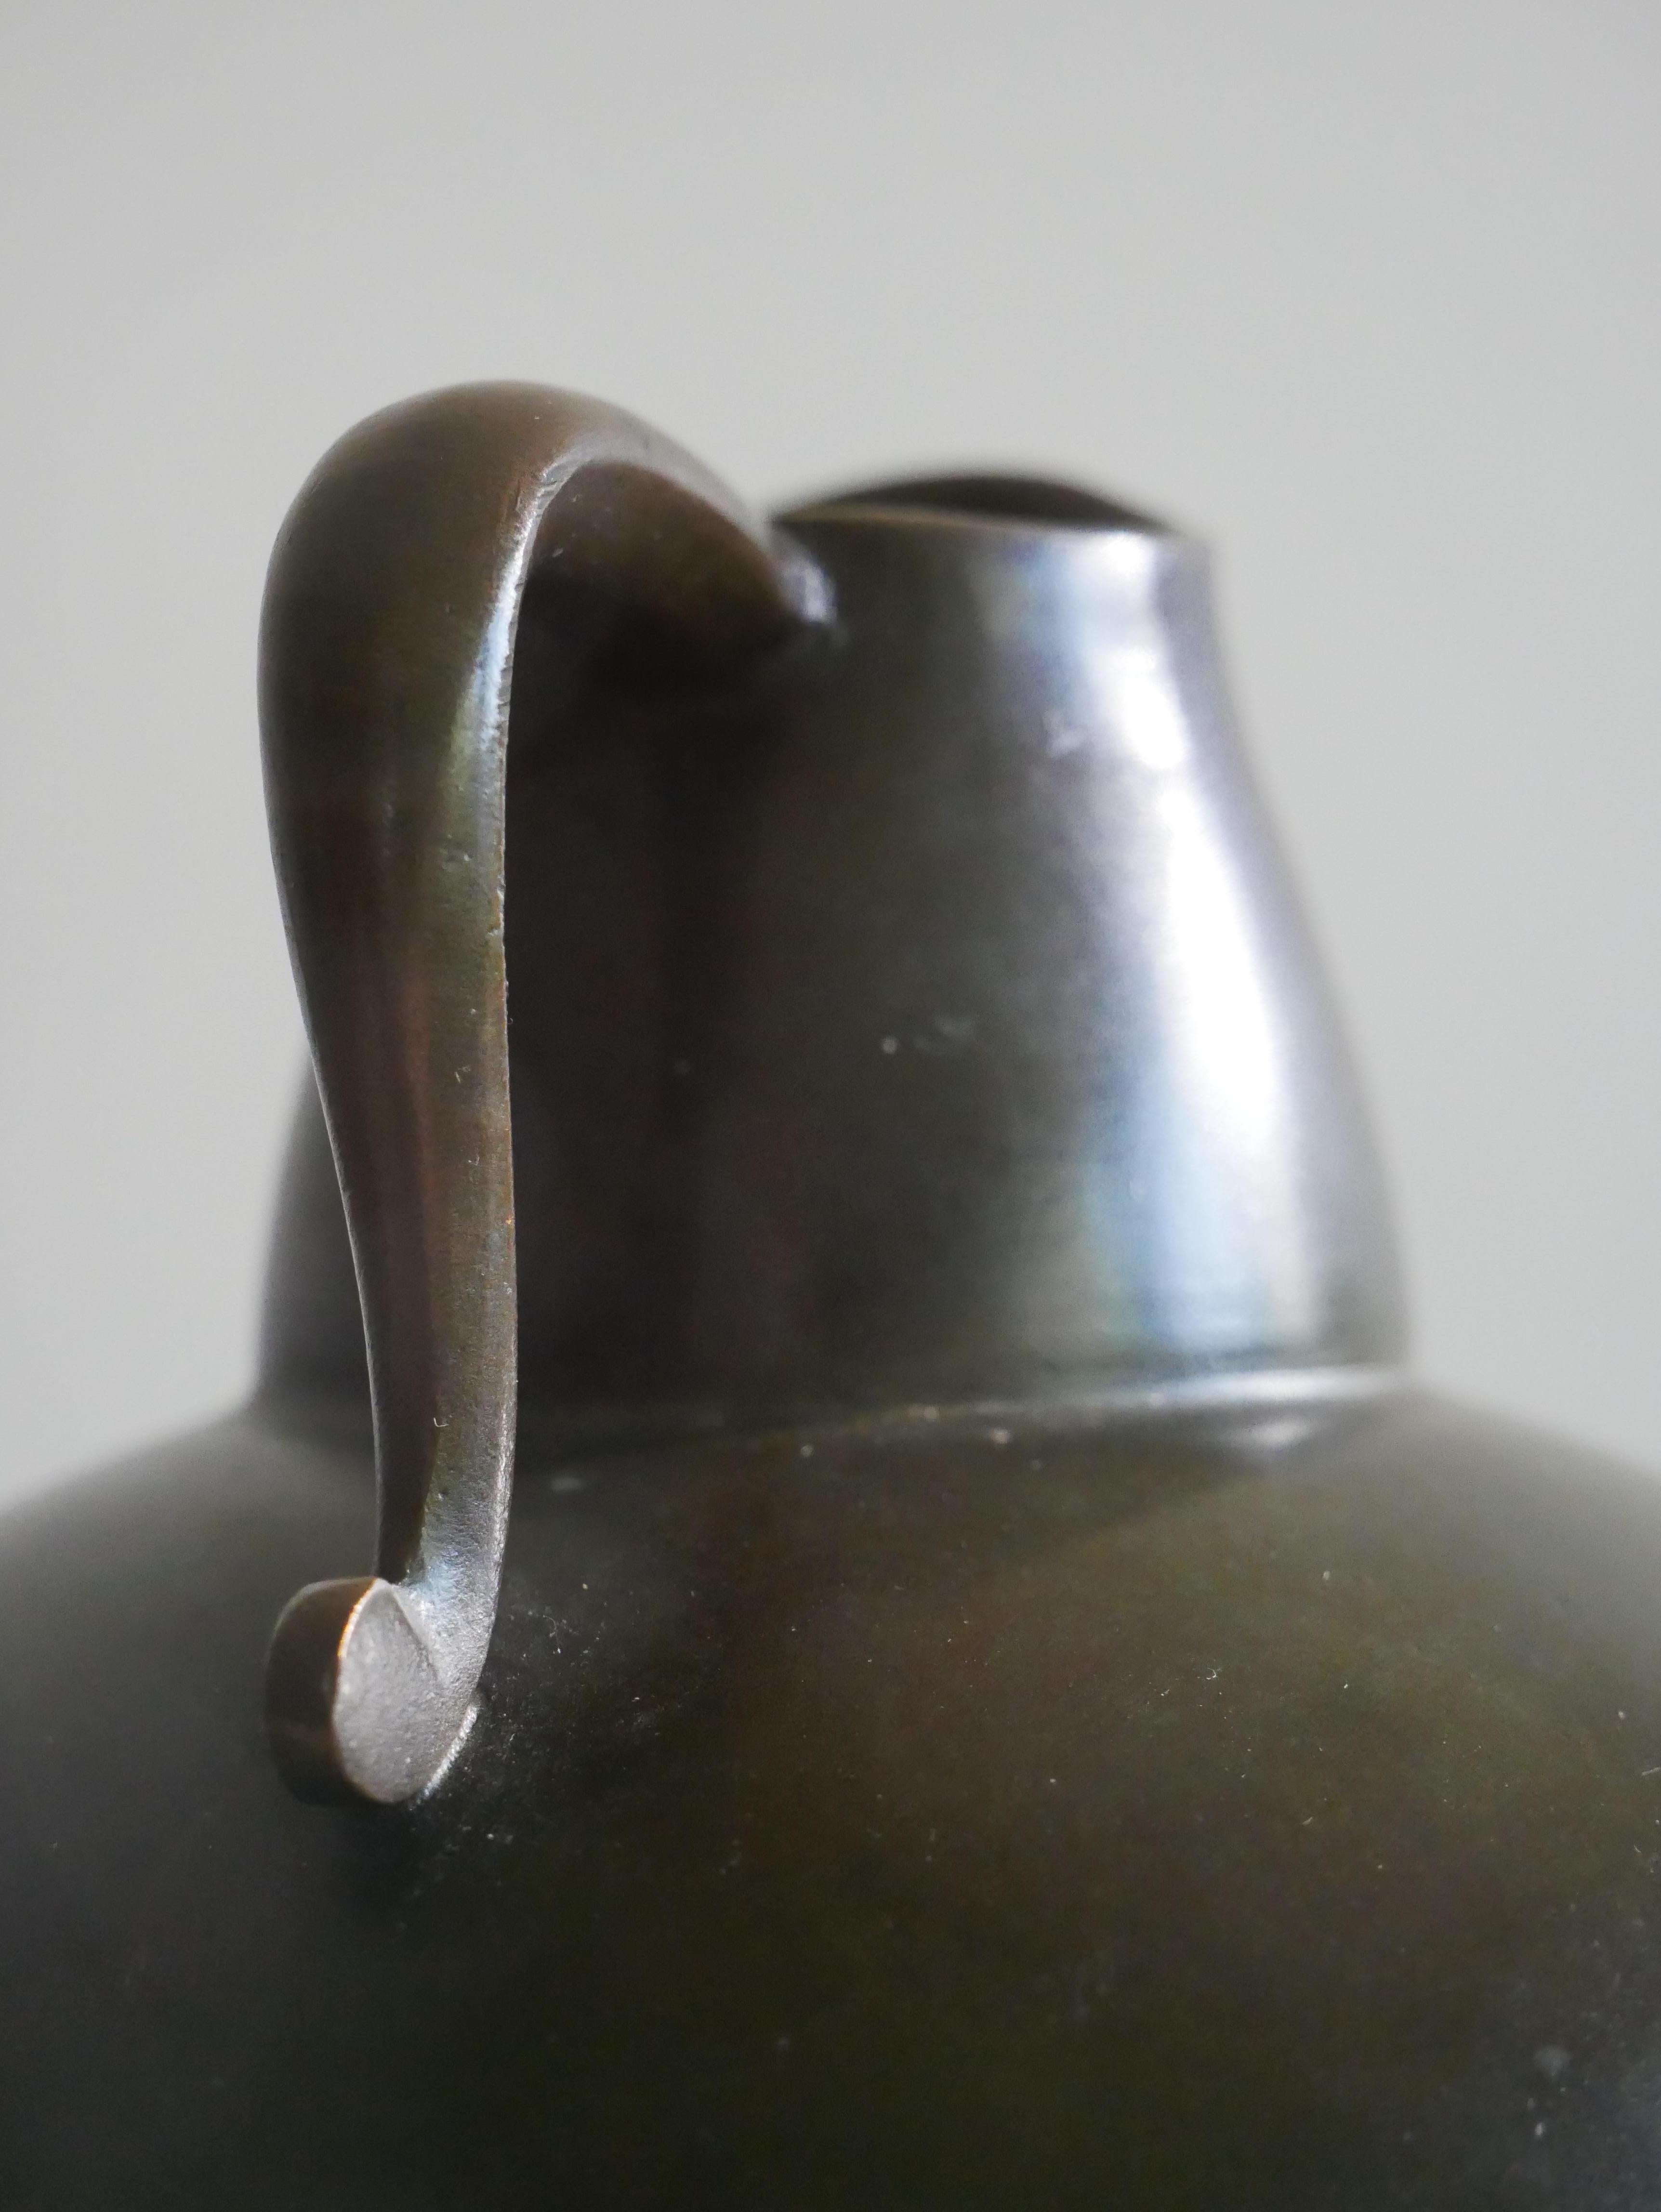 Vase designed and produced by GAB, Guldsmedsaktiebolaget, Sweden, 1930s. 
Stamped with makers mark. 
Made in cast bronze.